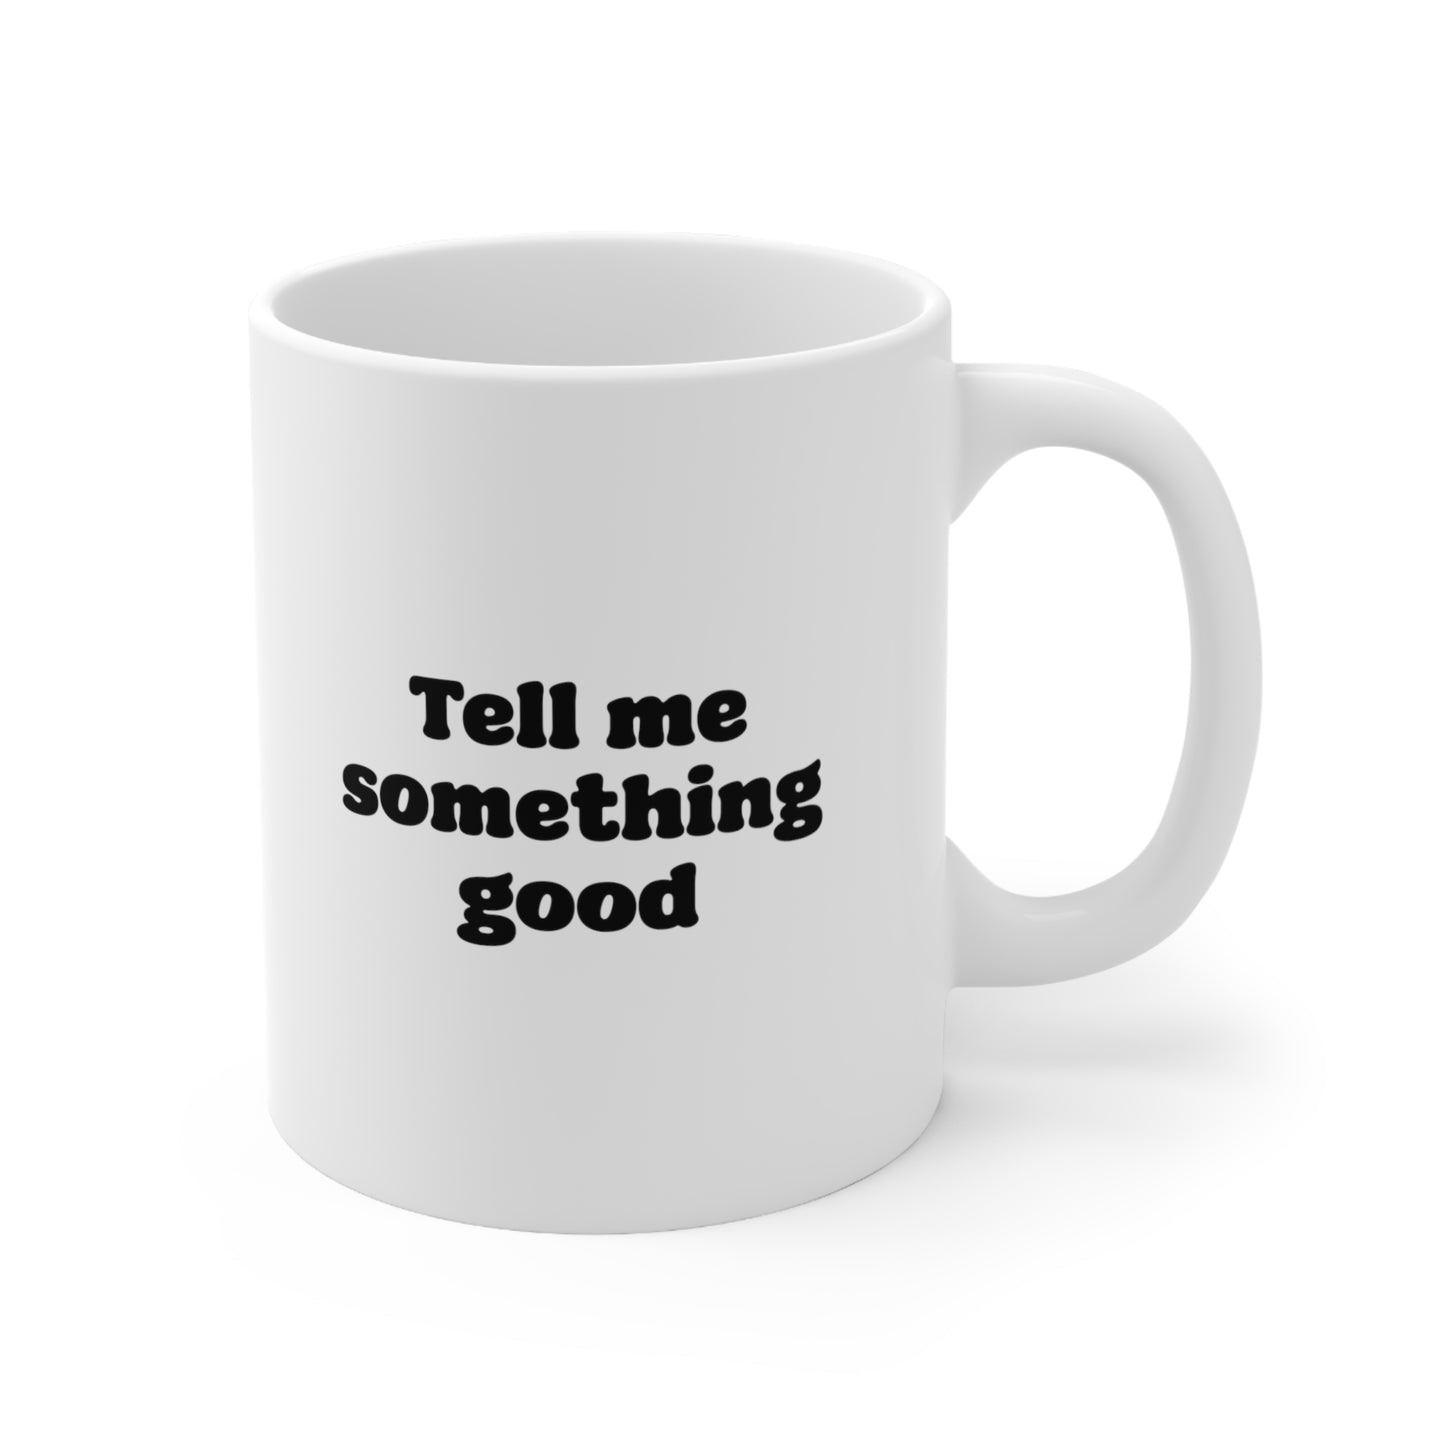 Tell me something good Coffee Mug 11oz